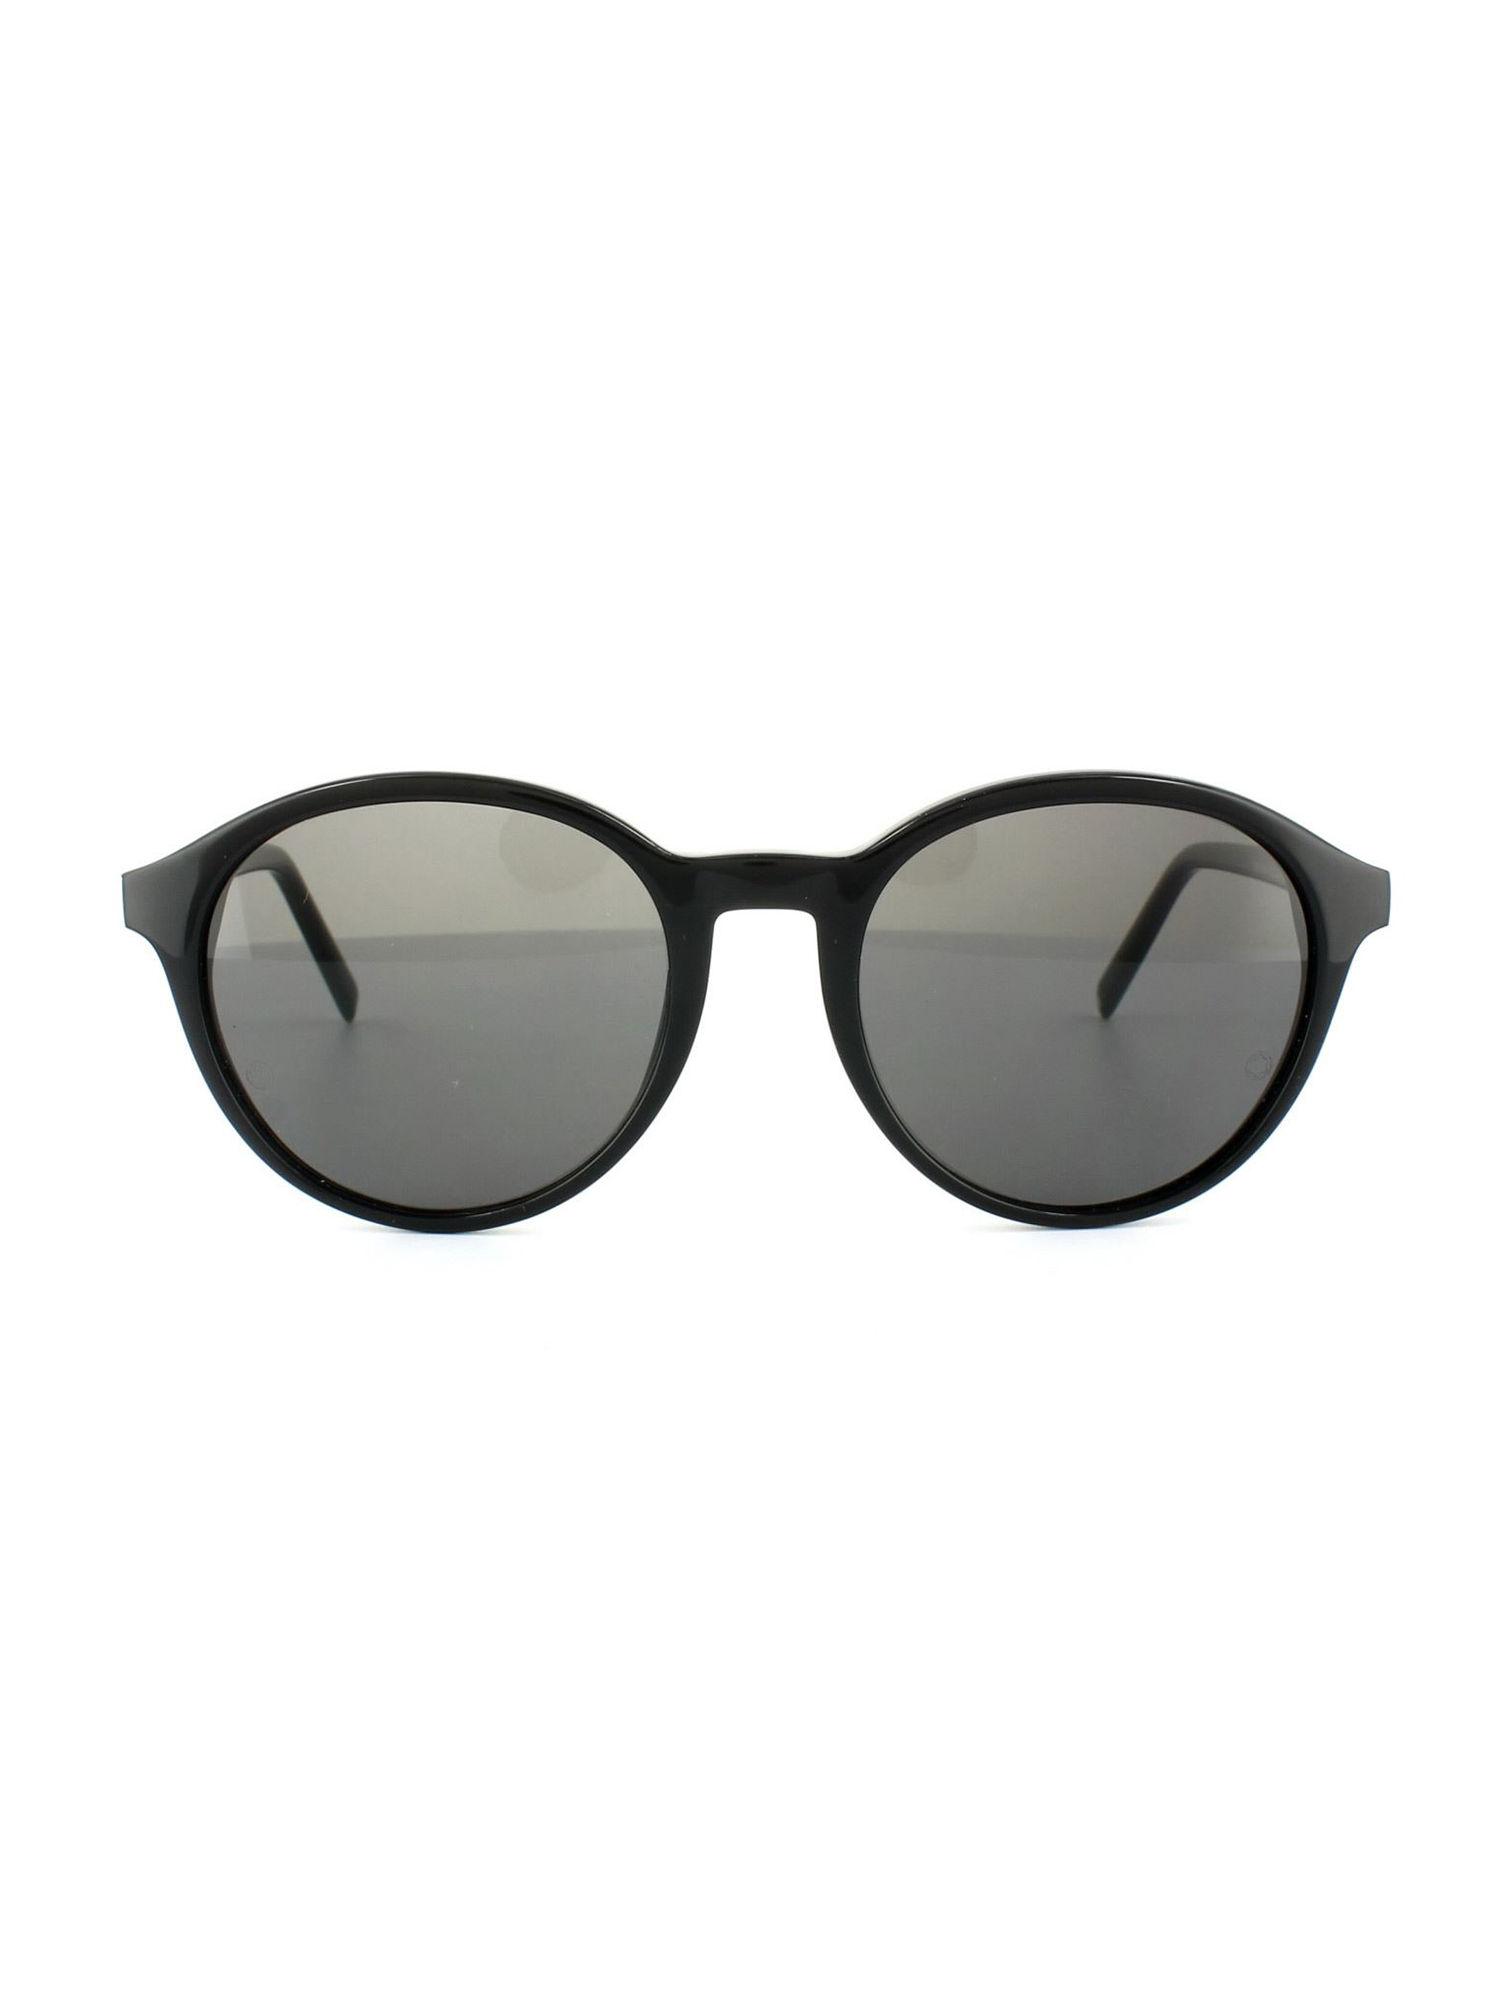 black plastic sunglasses